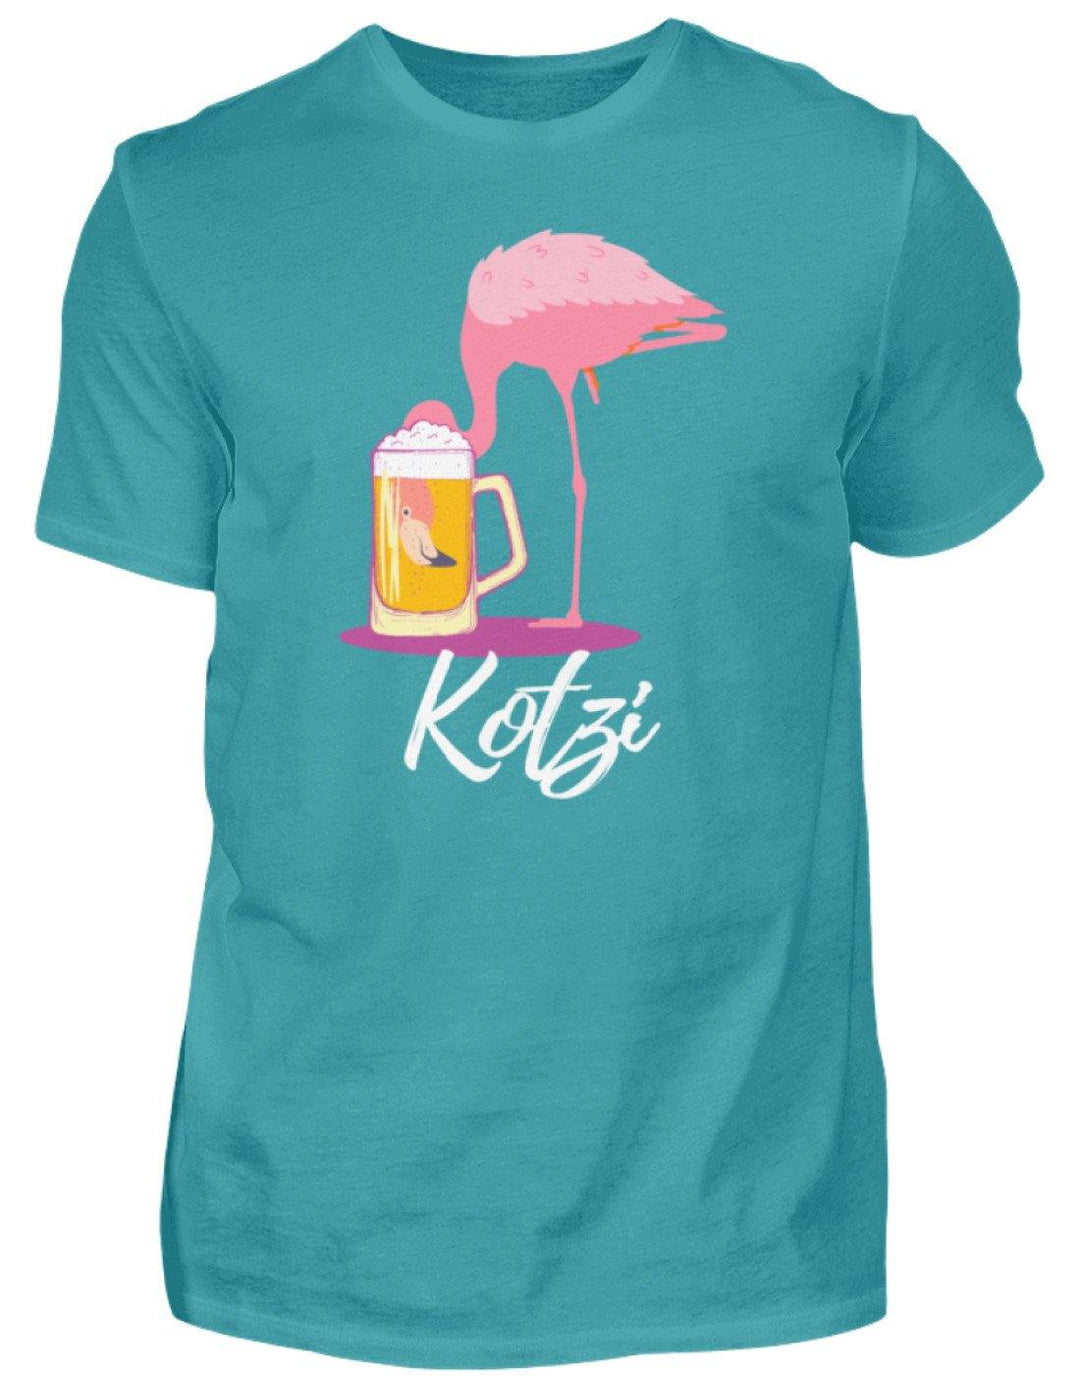 Flamingo Kotzi - Words on Shirt  - Herren Shirt - Words on Shirts Sag es mit dem Mittelfinger Shirts Hoodies Sweatshirt Taschen Gymsack Spruch Sprüche Statement